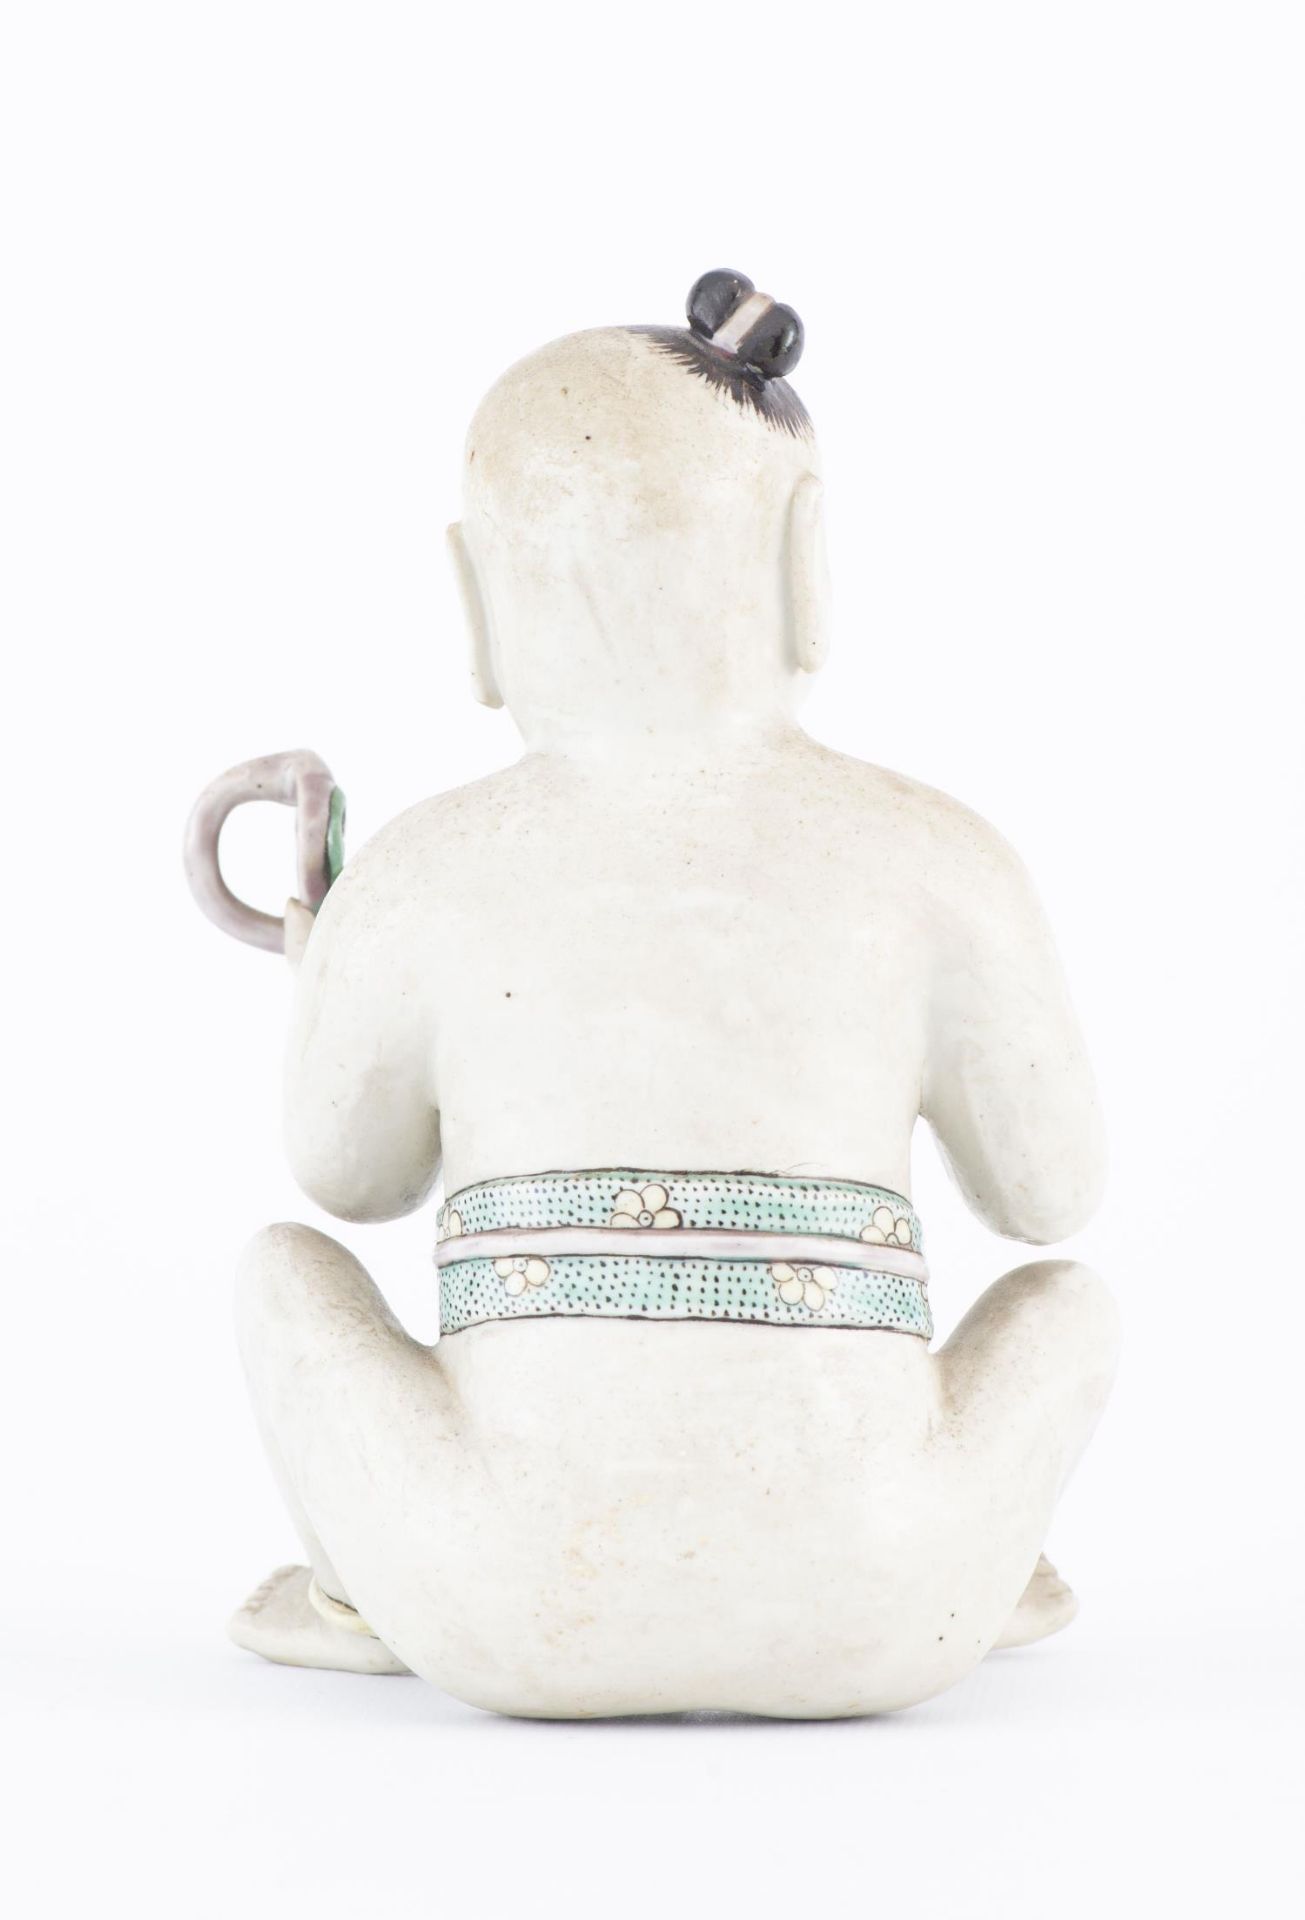 Statuette d'un Hoho (jeune garçon) assis en biscuit - Image 5 of 18